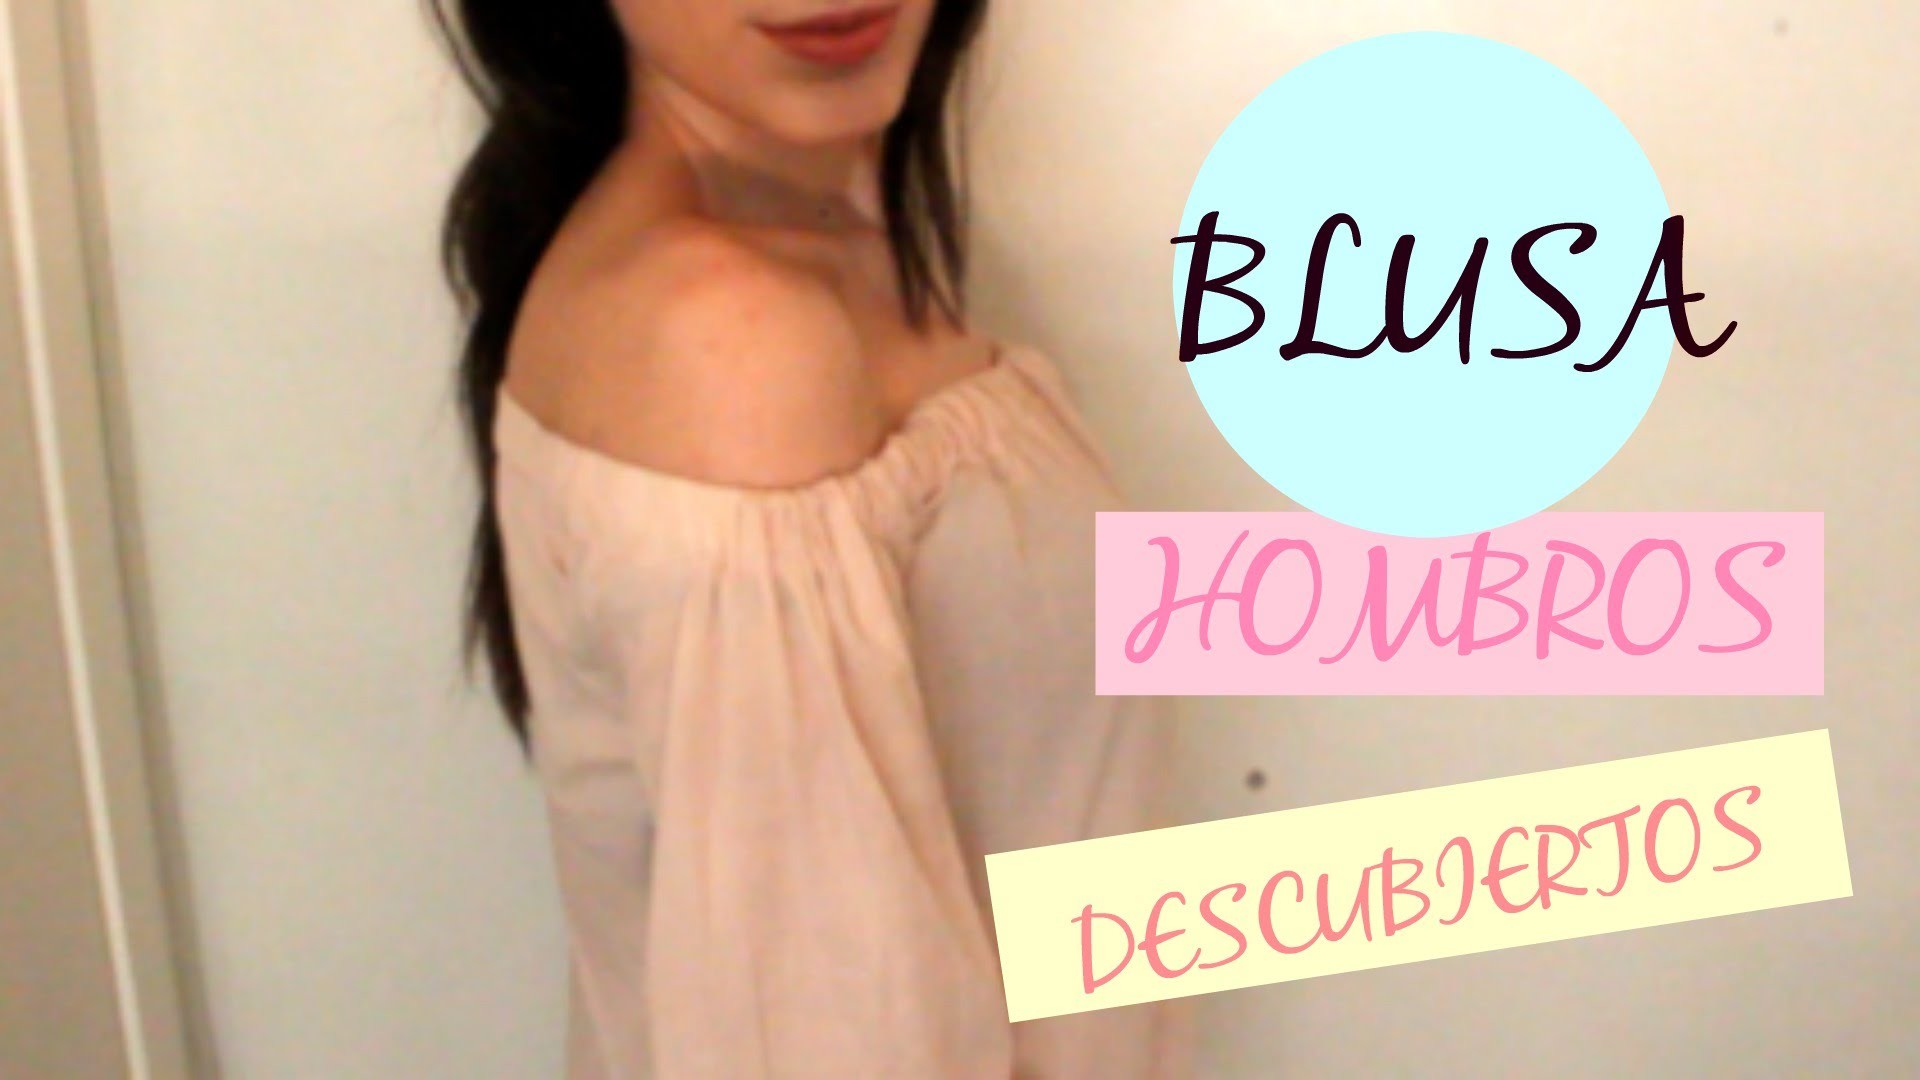 DIY Blusa Hombros descubiertos | DIY off shoulder blouse